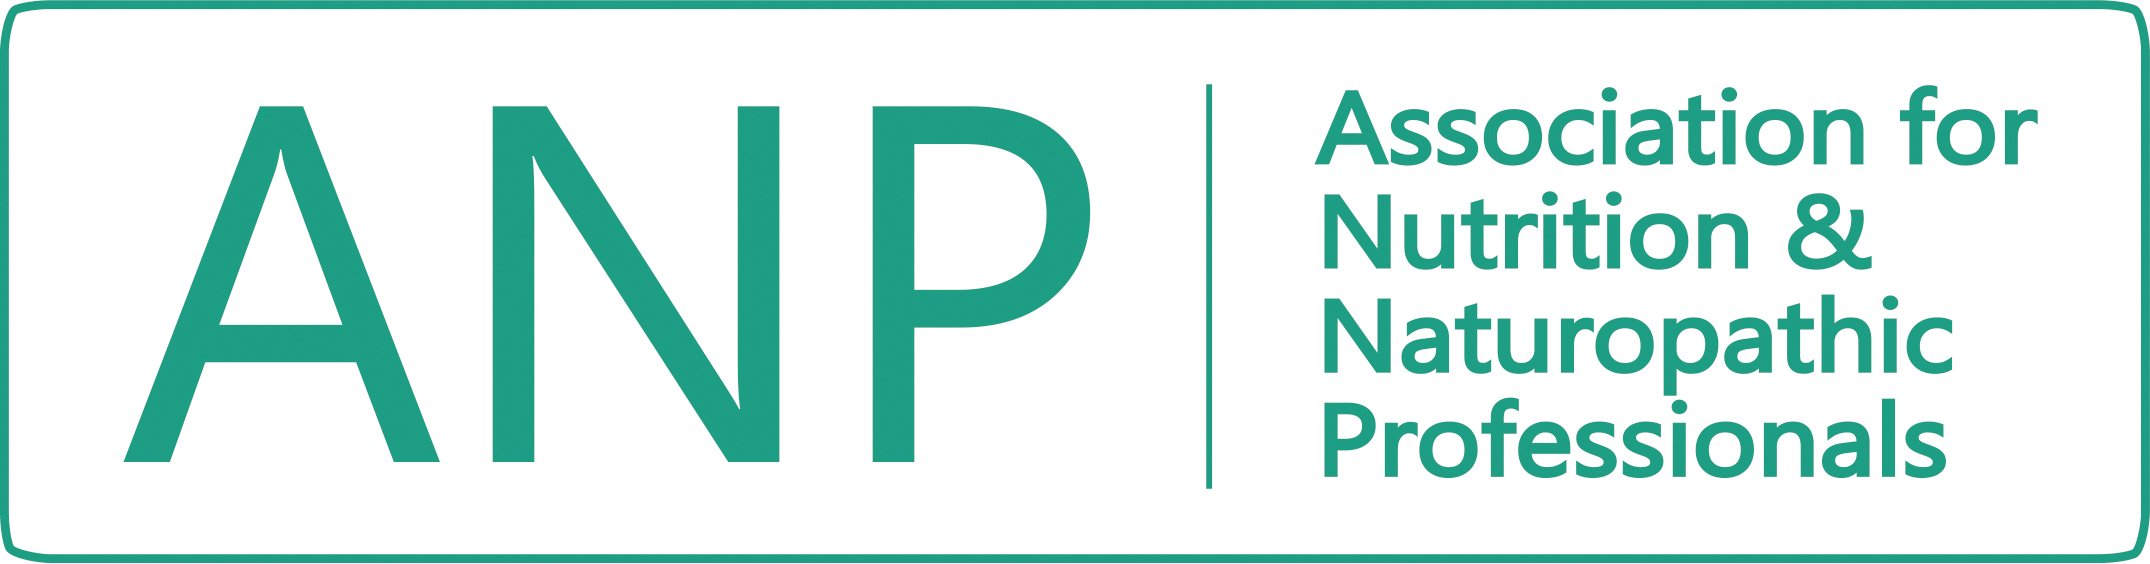 ANP Logo 2019 Teal hi res.jpg